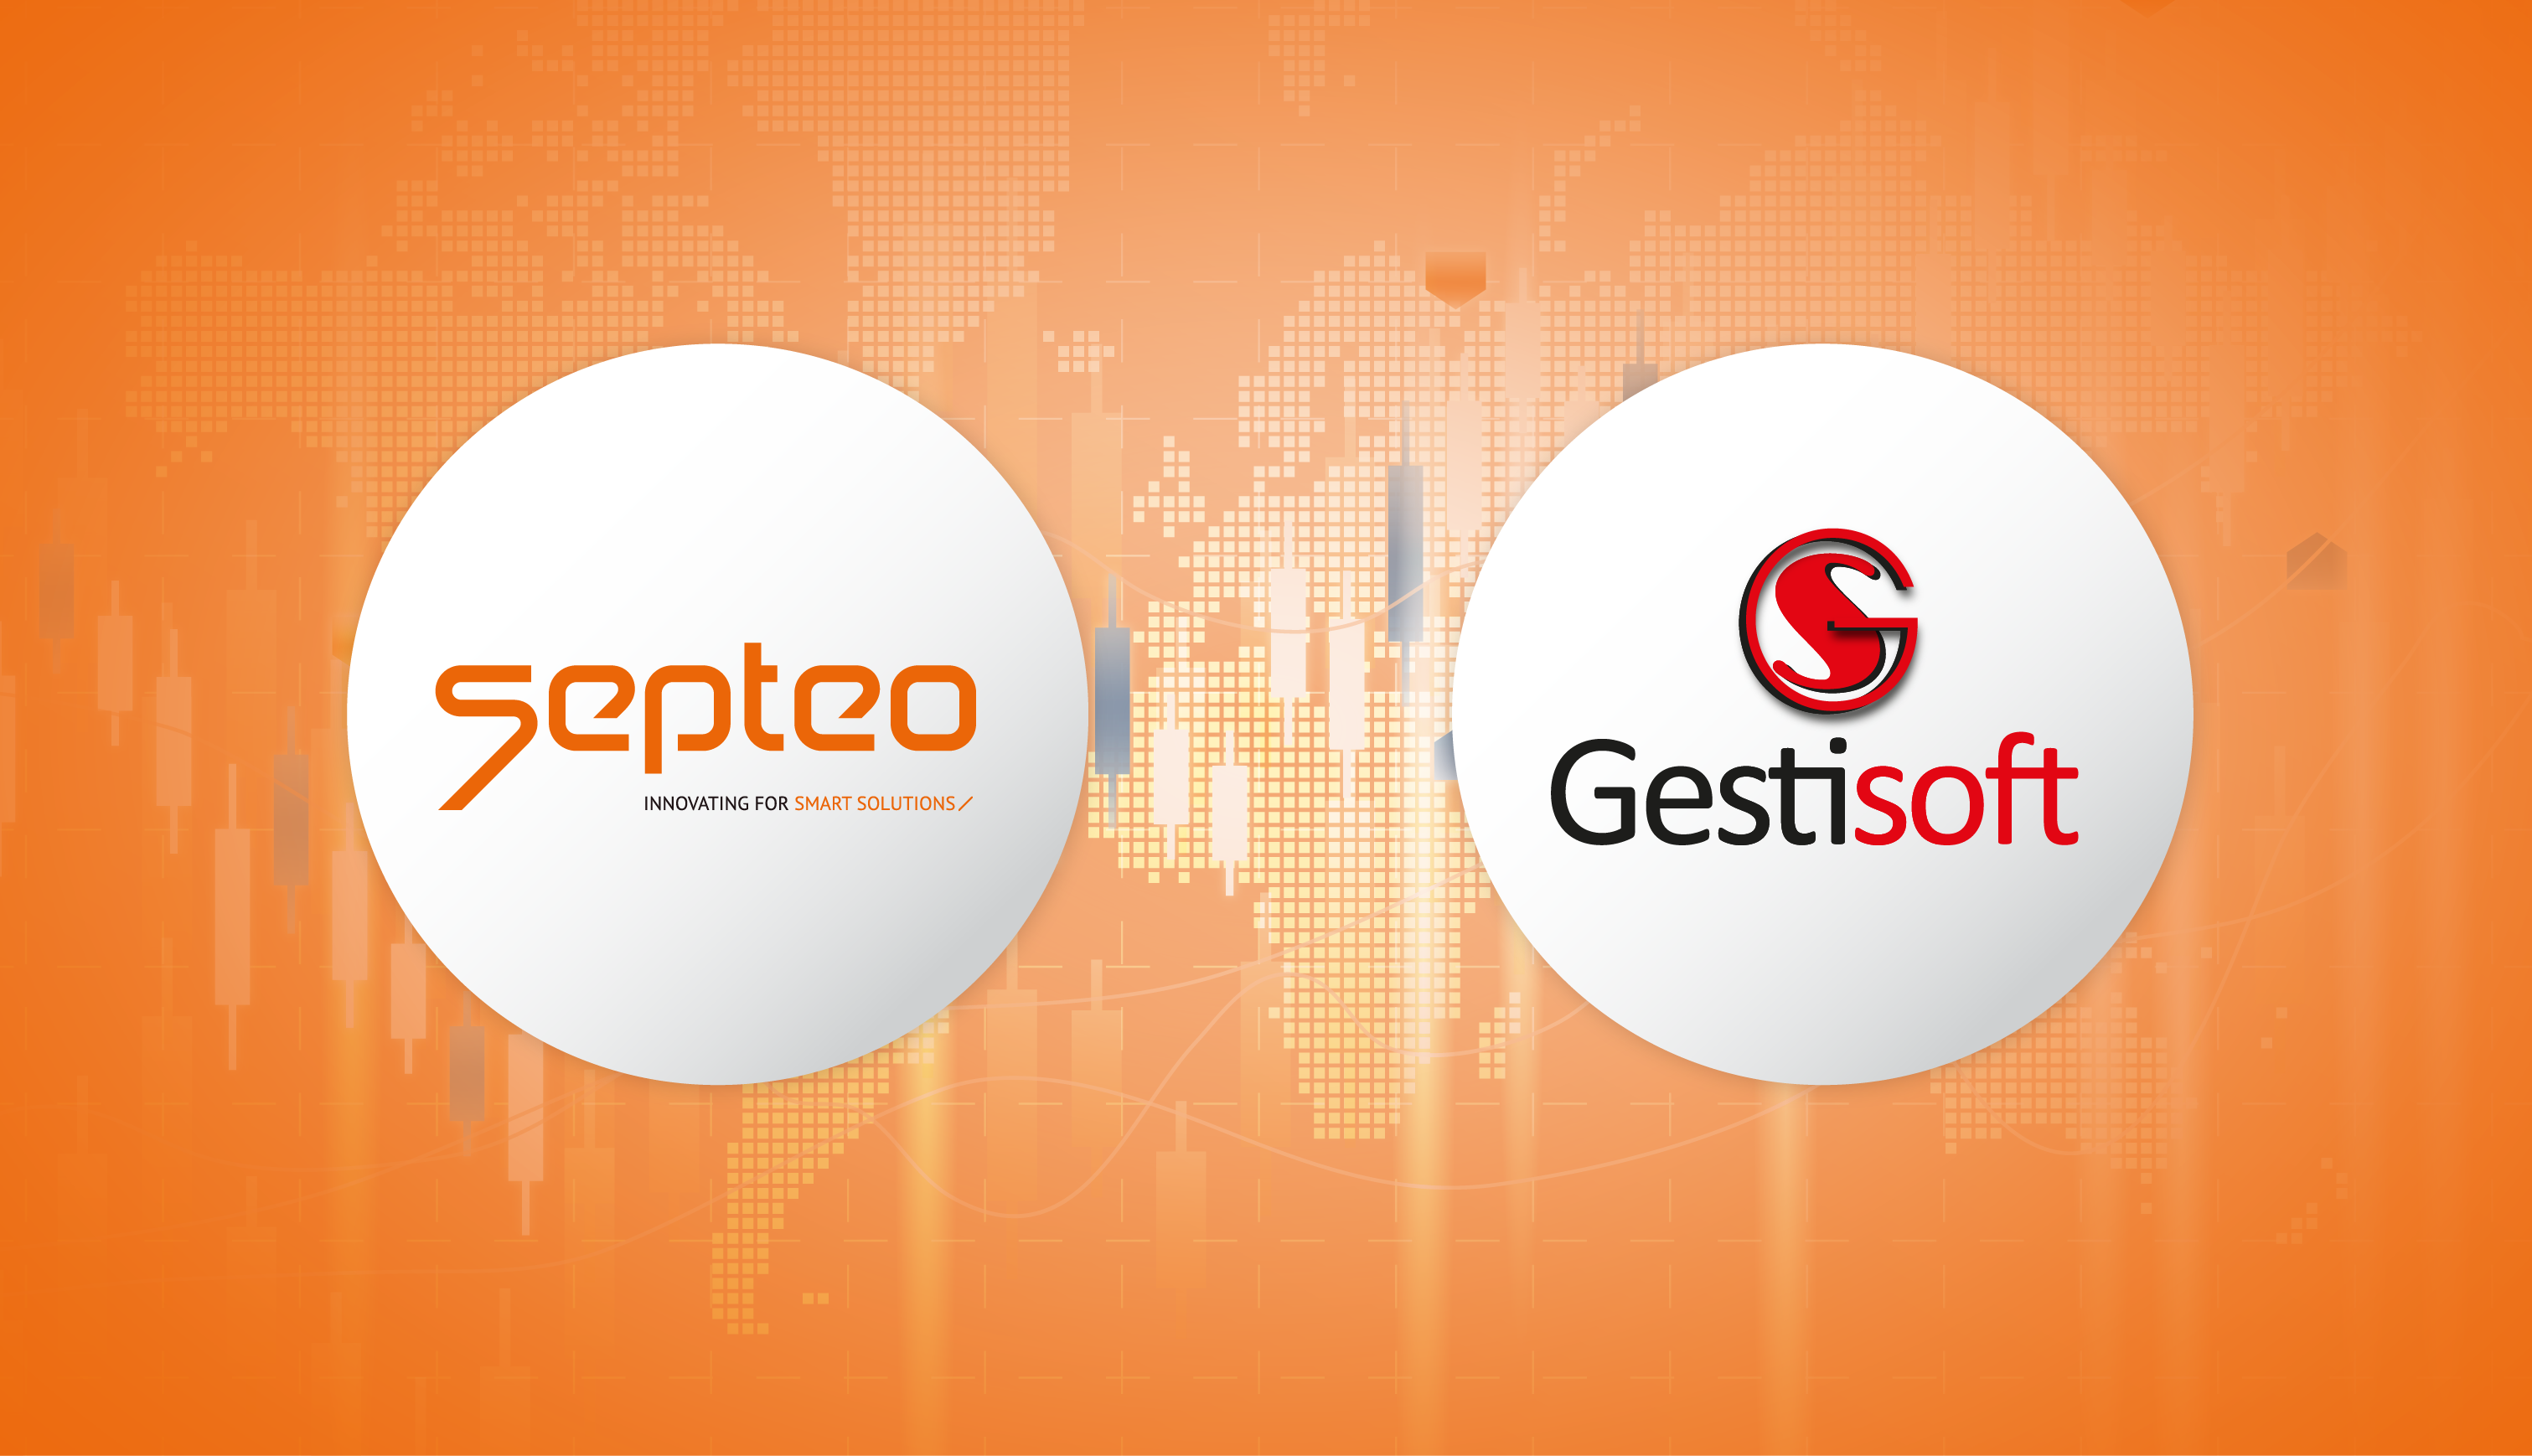 Le groupe Septeo, au travers de sa filiale Secib, fait l’acquisition de Gestisoft, 1er logiciel de gestion sur mesure pour les grands cabinets d’avocats.